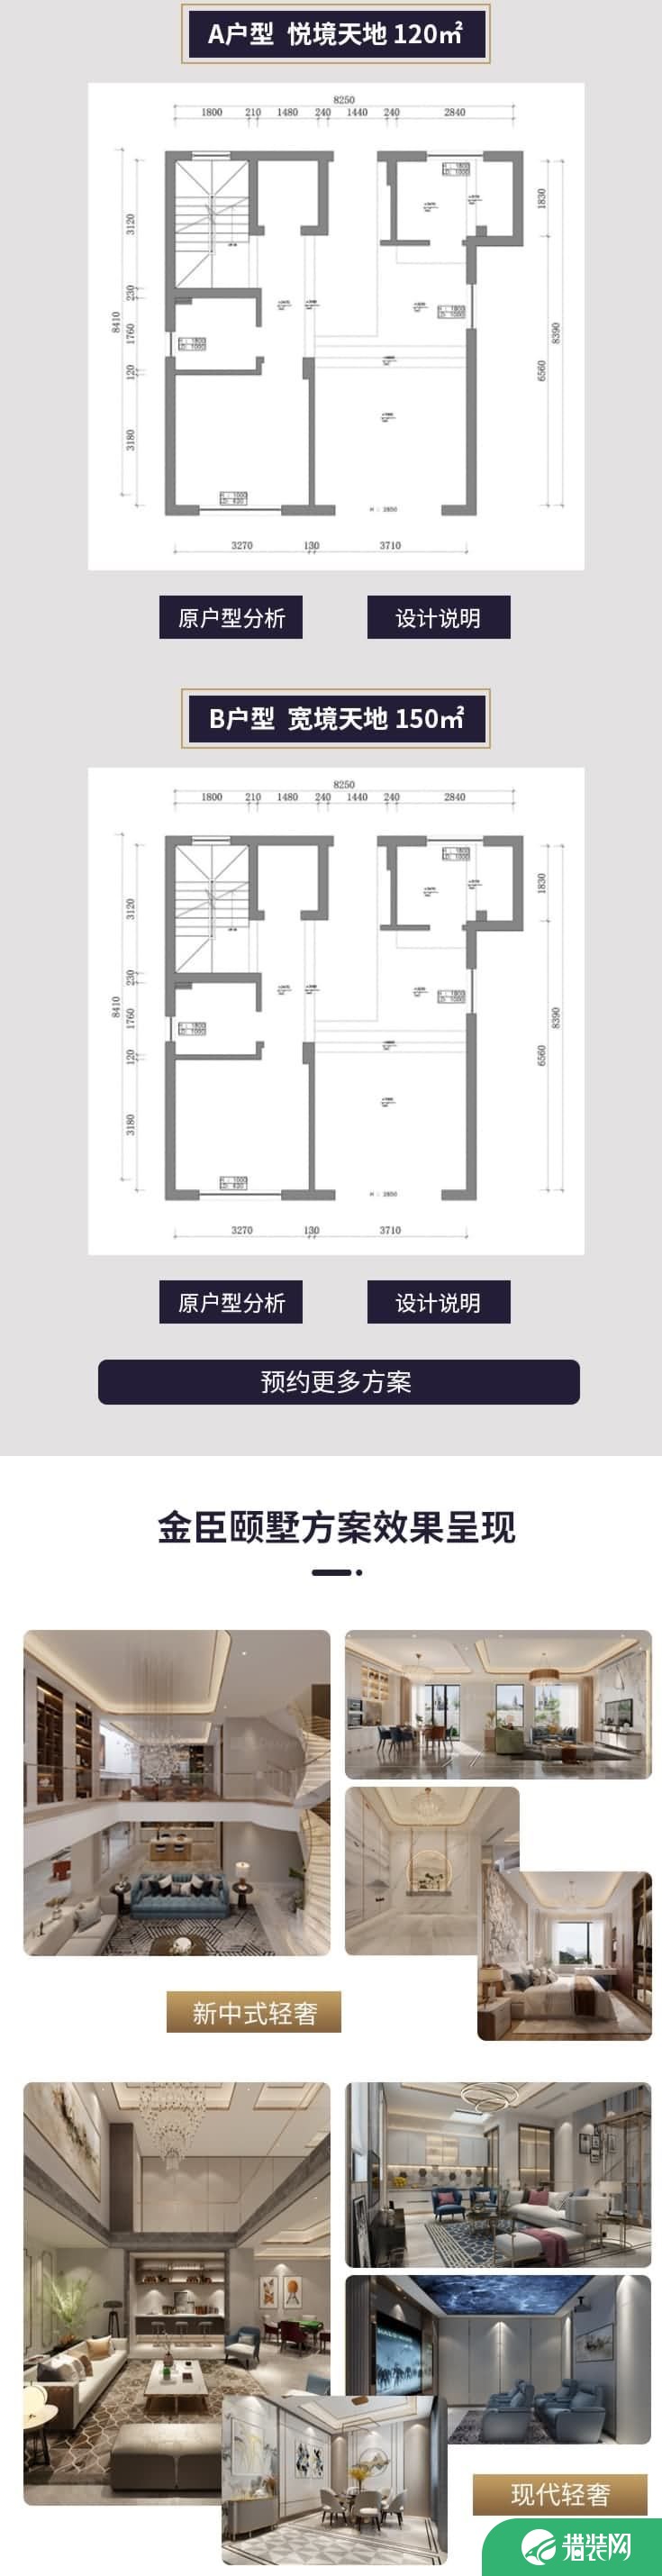 上海腾龙别墅设计金臣颐墅样板房征集中 速速快来报名吧